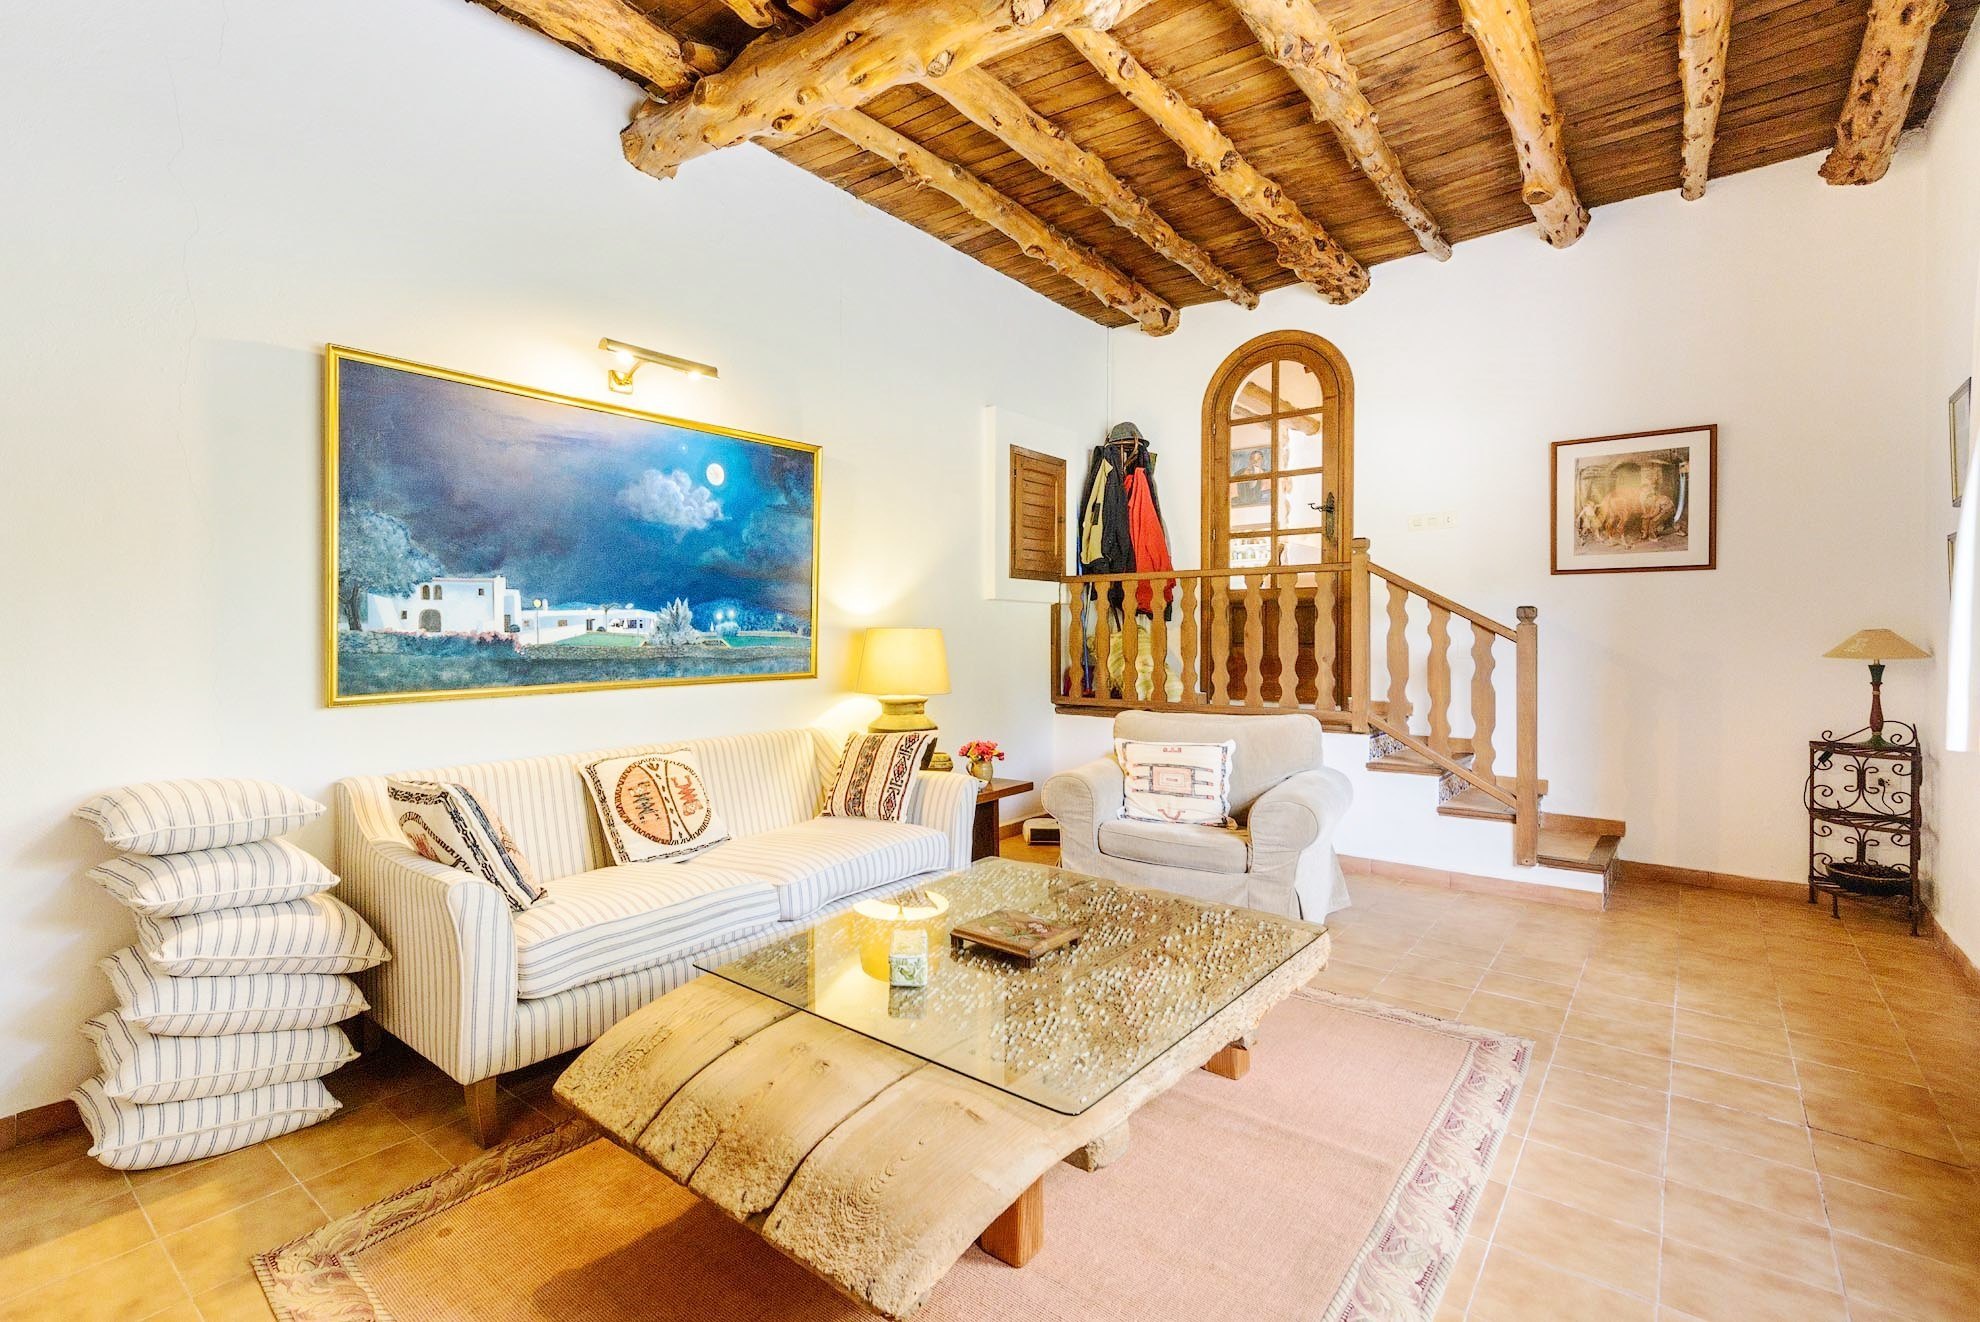 Villa amplia y luminosa de estilo tradicional ibicenco con excelentes vistas